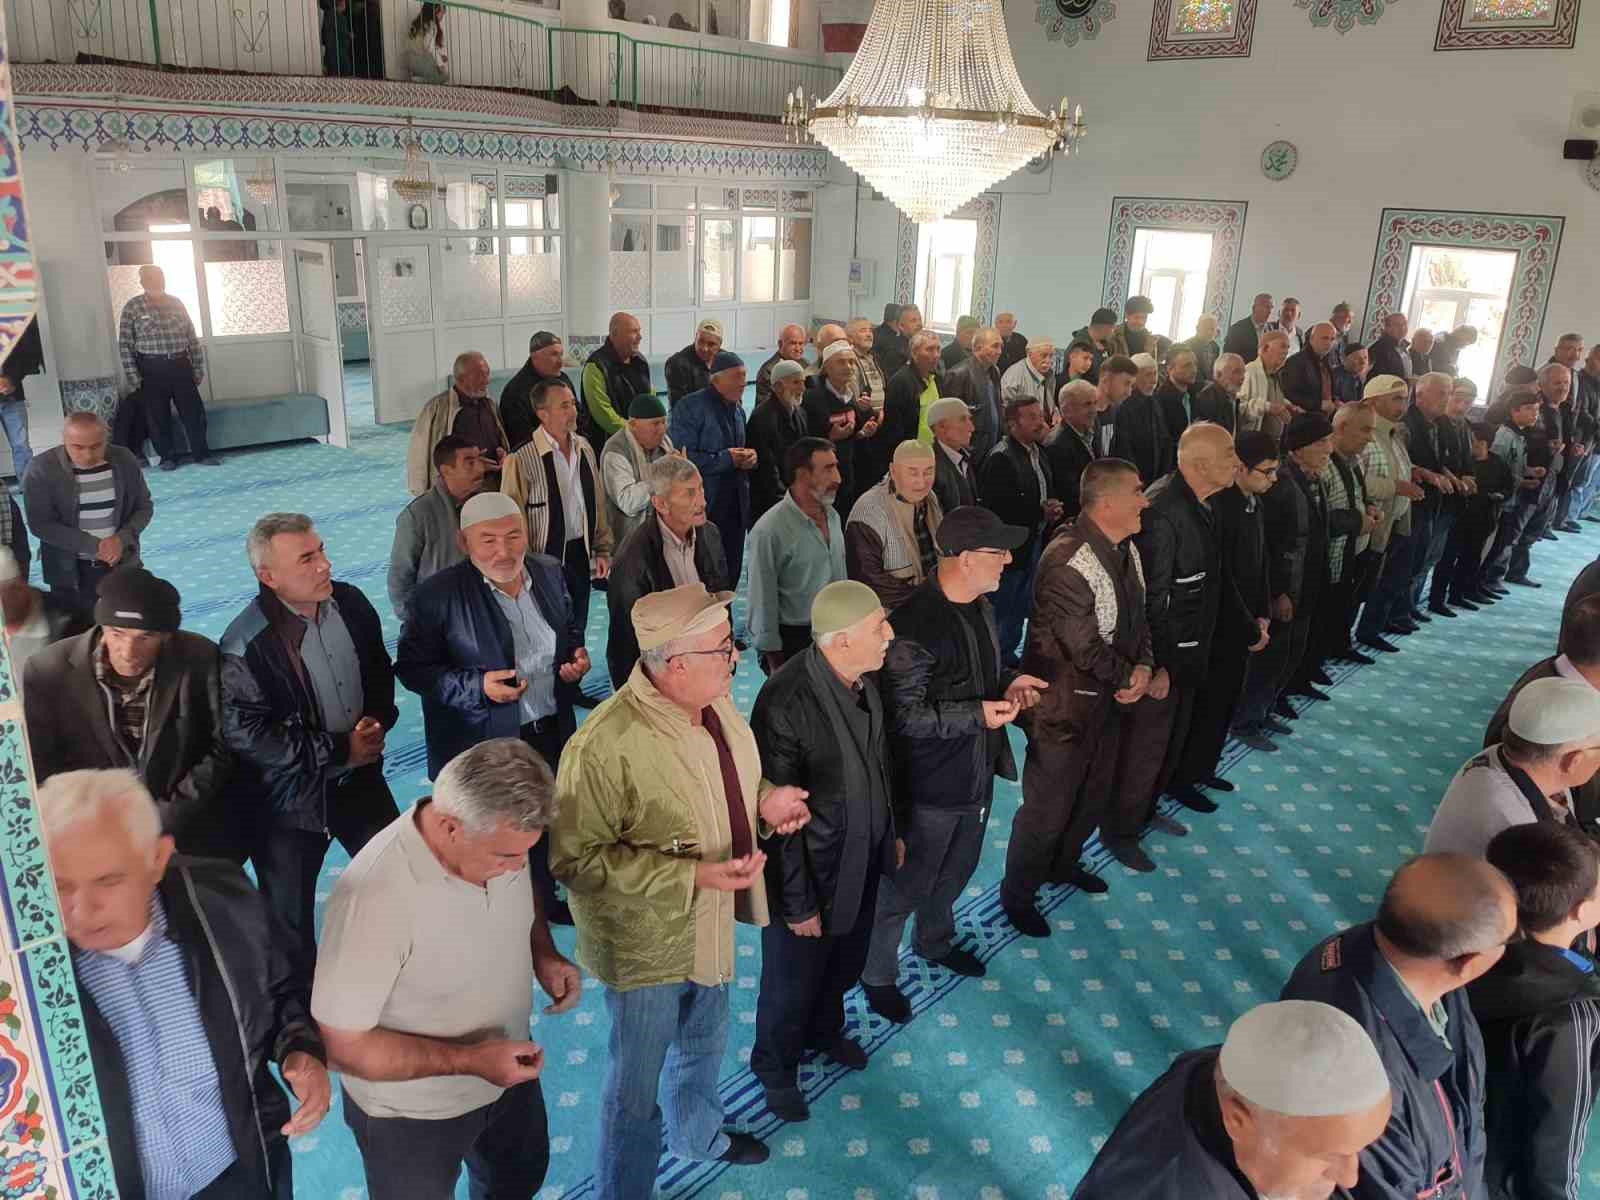 Yozgat’ta camilerde yağmur duası ediliyor
